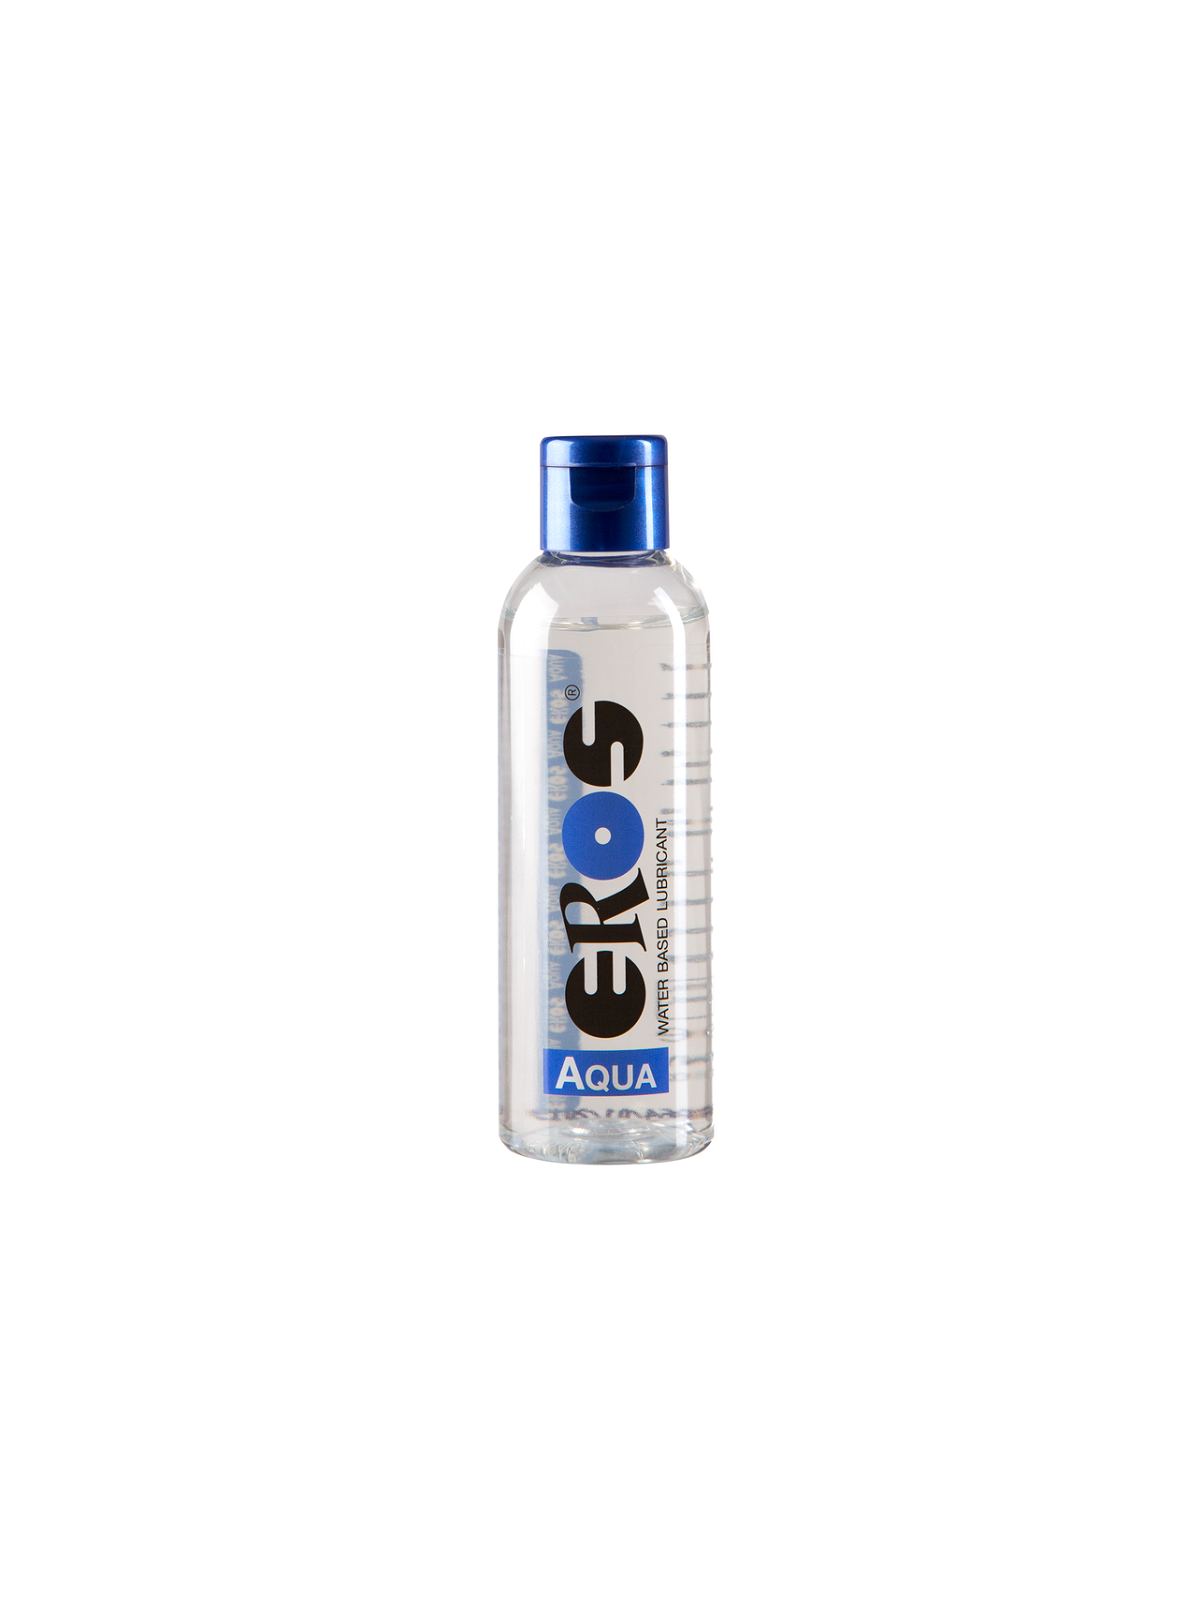 Eros Aqua Lubricante Denso Medico - Comprar Lubricante agua Eros - Lubricantes base agua (1)